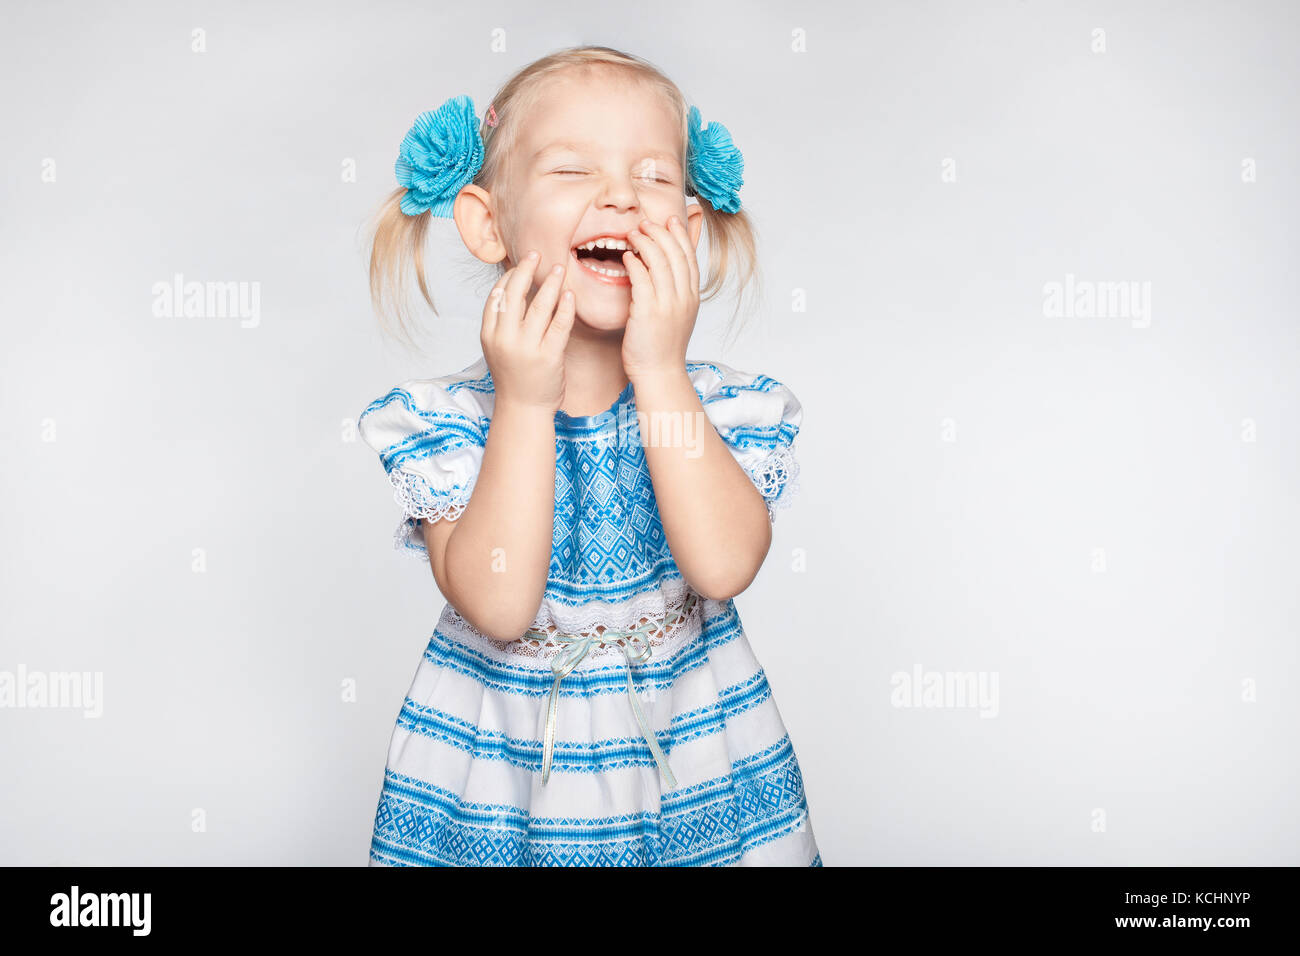 Lachende süsse kleine Mädchen auf weißem Hintergrund Stockfoto